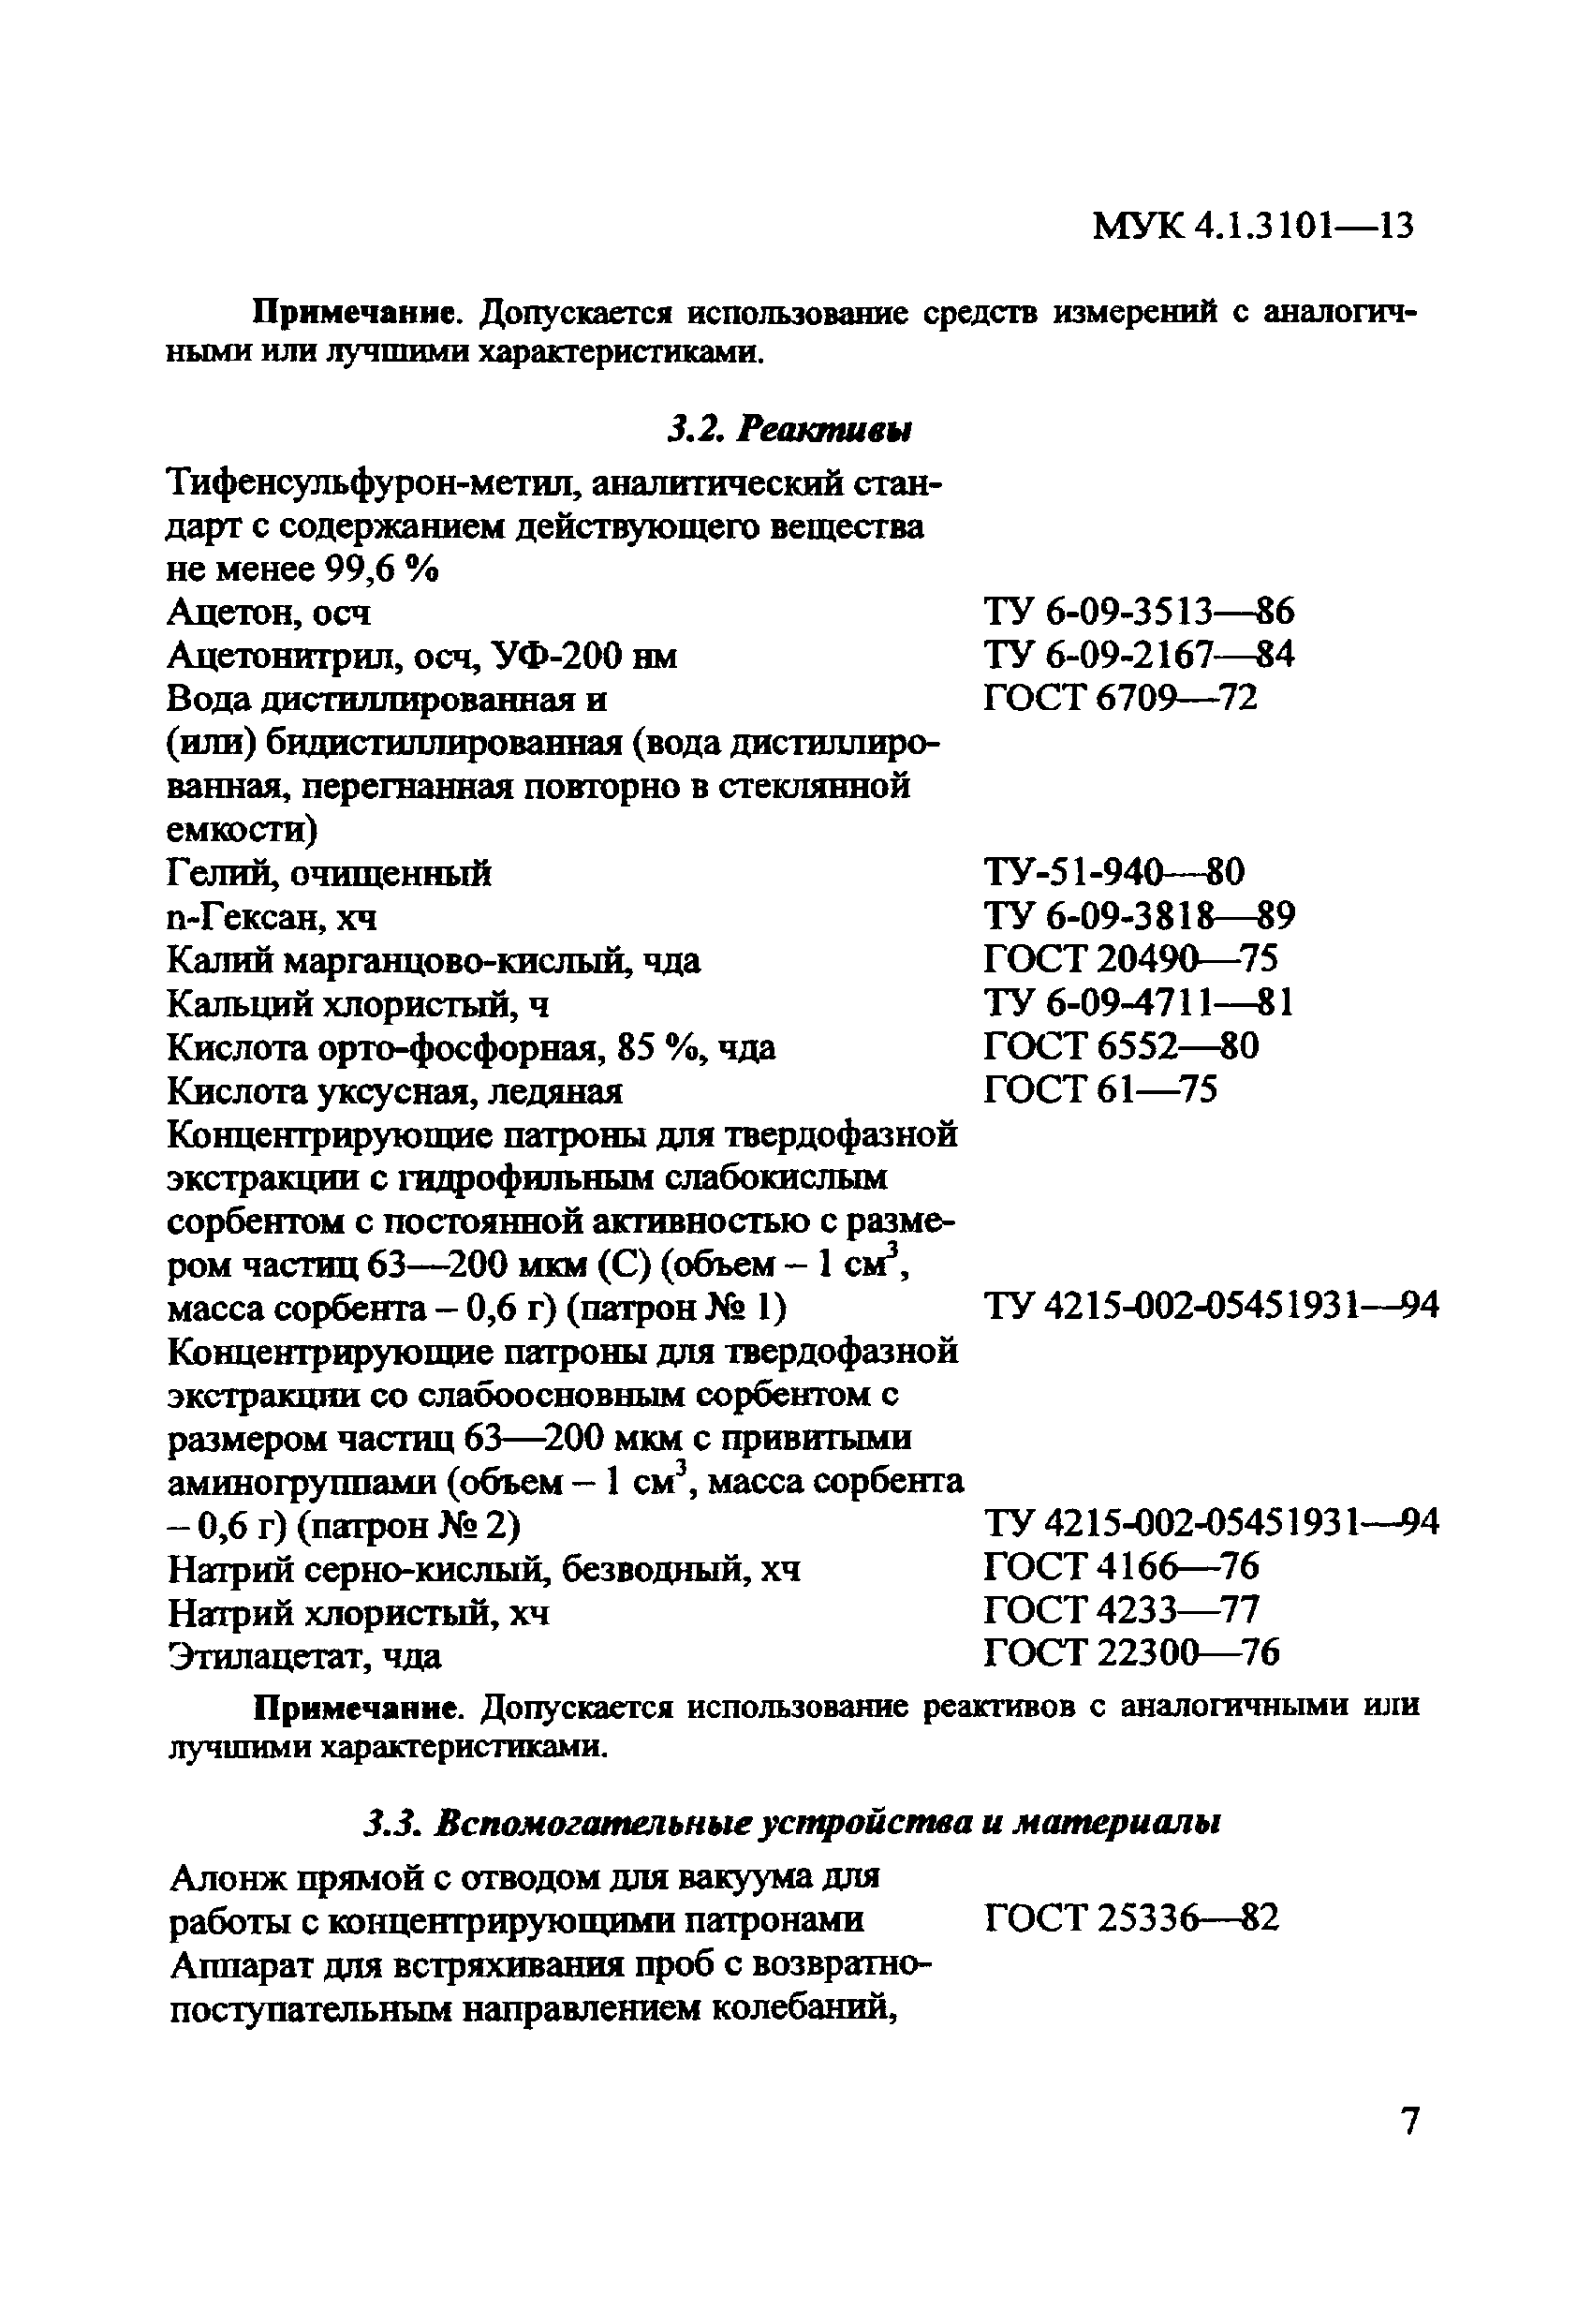 МУК 4.1.3101-13